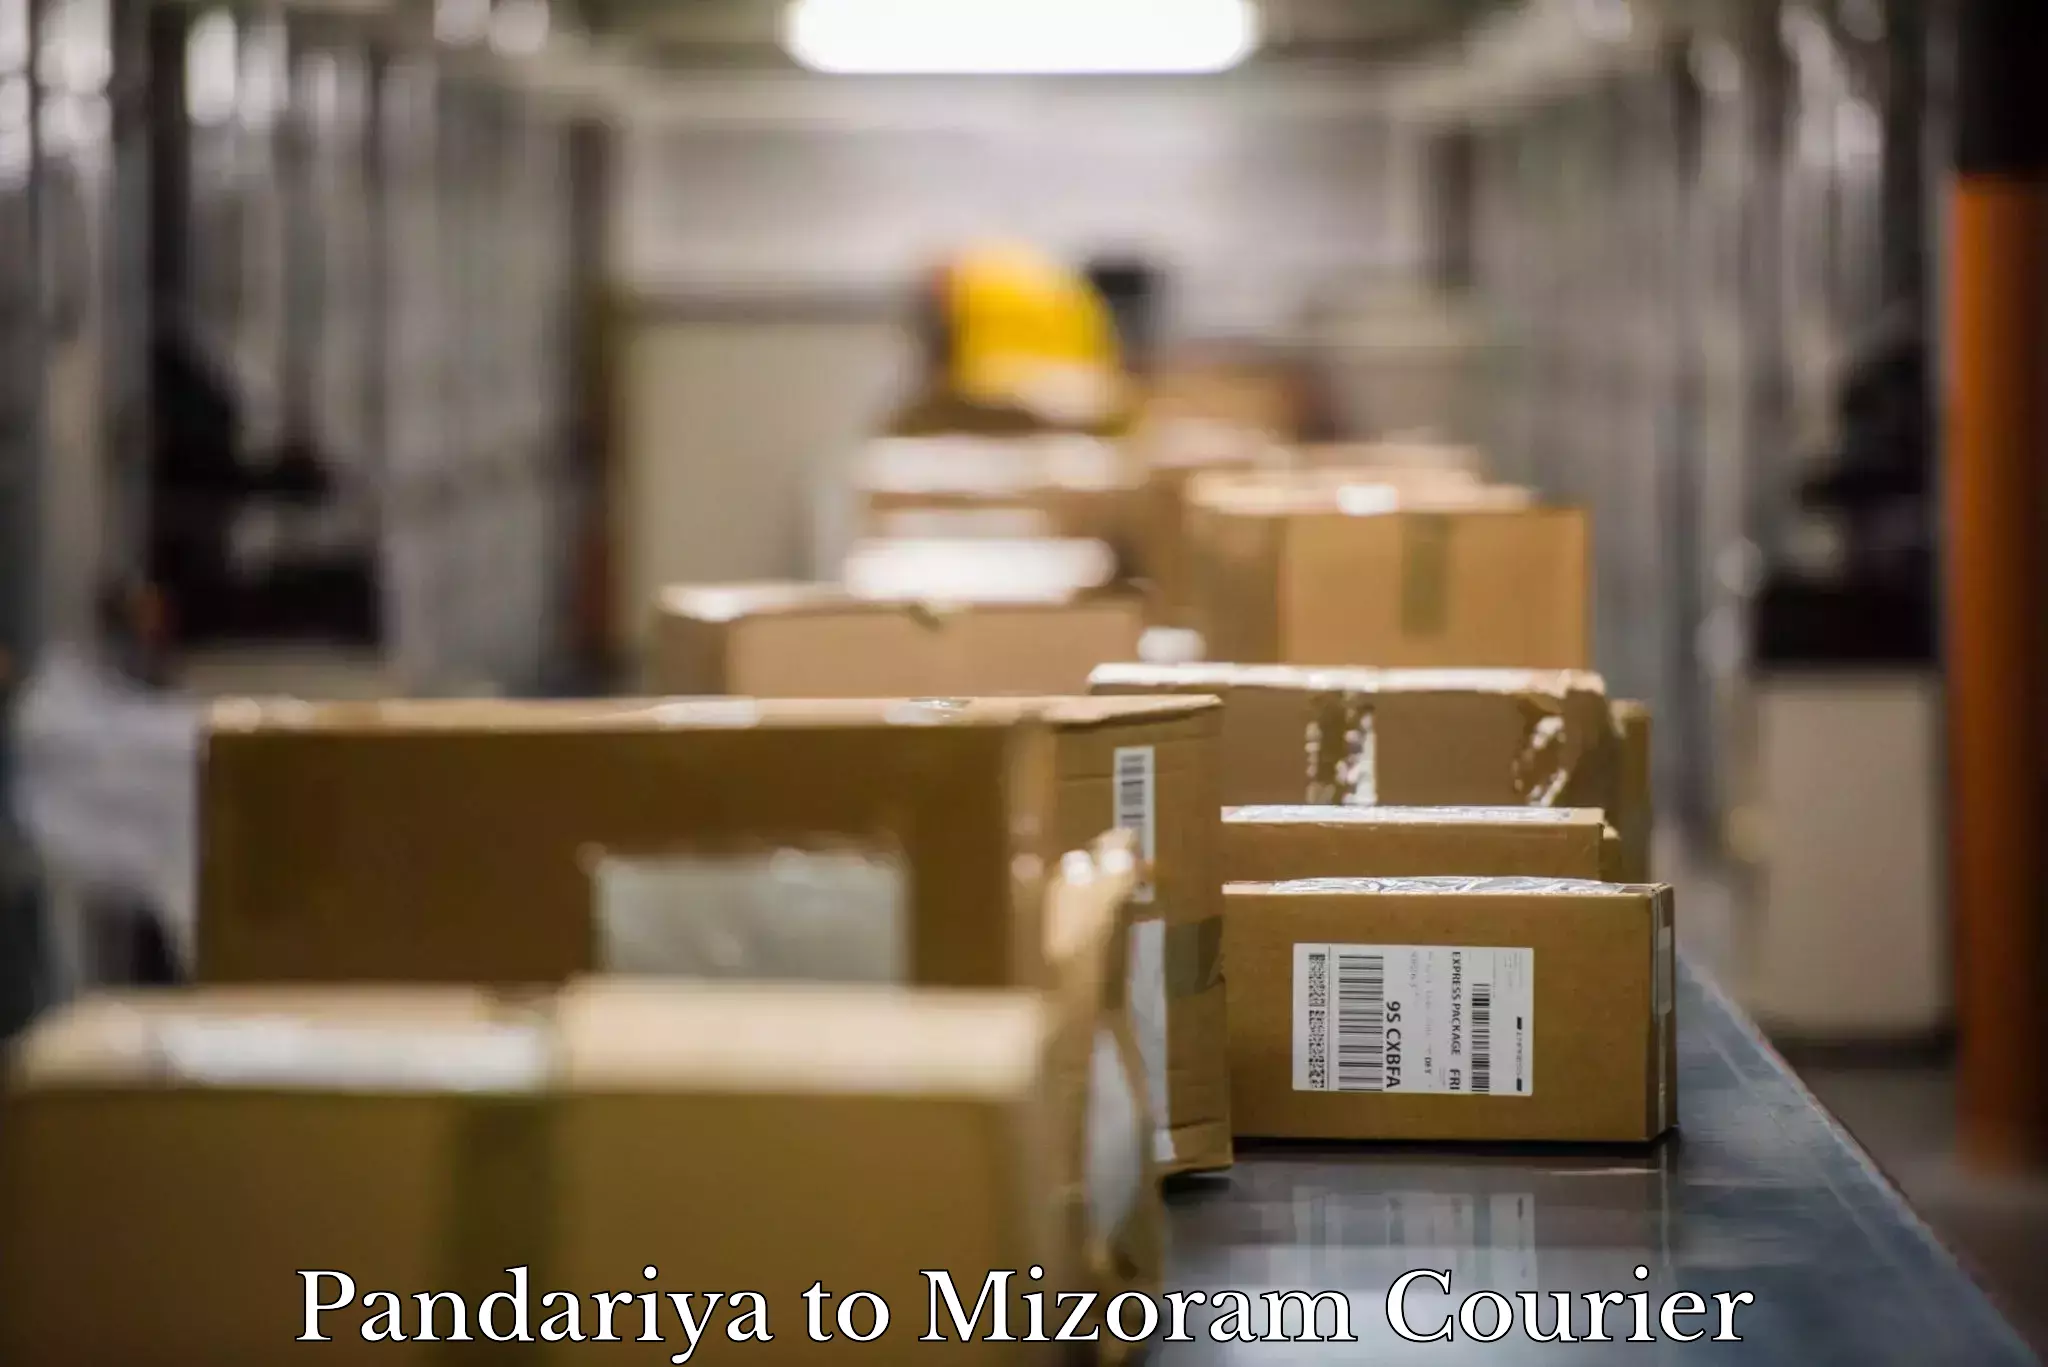 Efficient packing and moving Pandariya to Mizoram